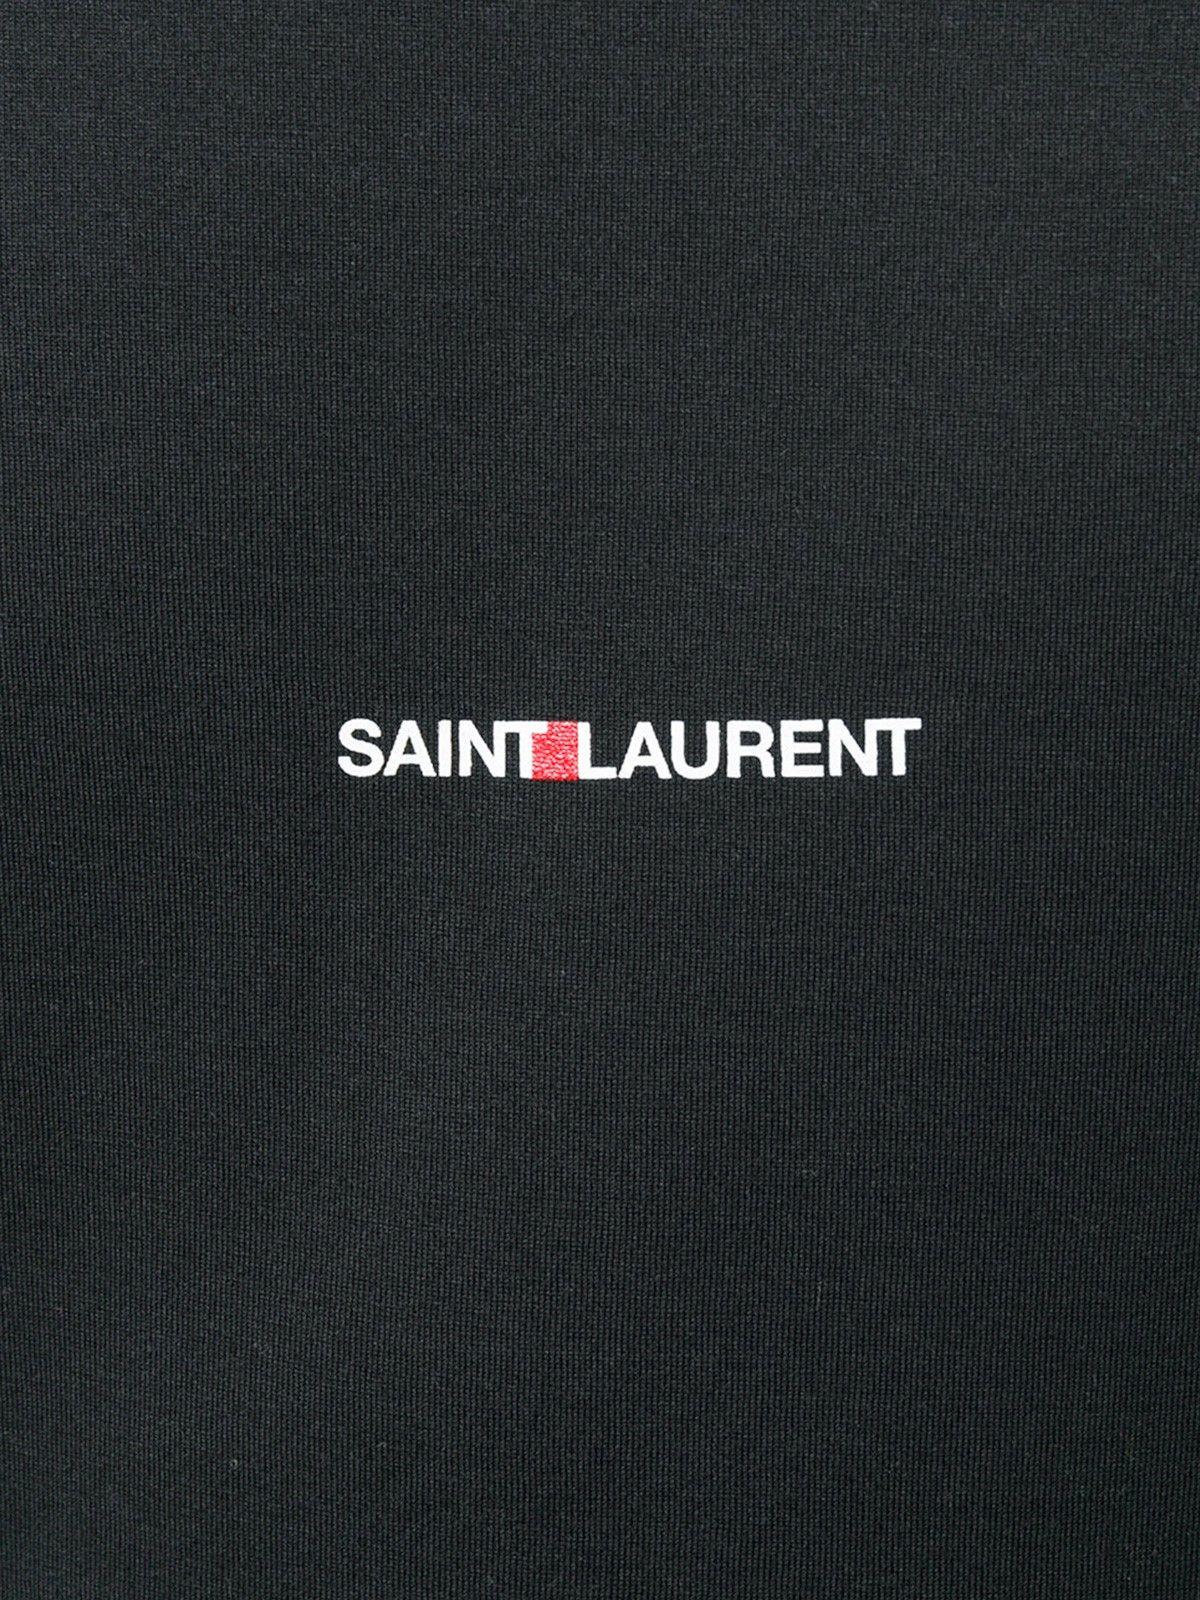 Saint Laurent Logo - saint laurent LOGO T-SHIRT available on montiboutique.com - 22004